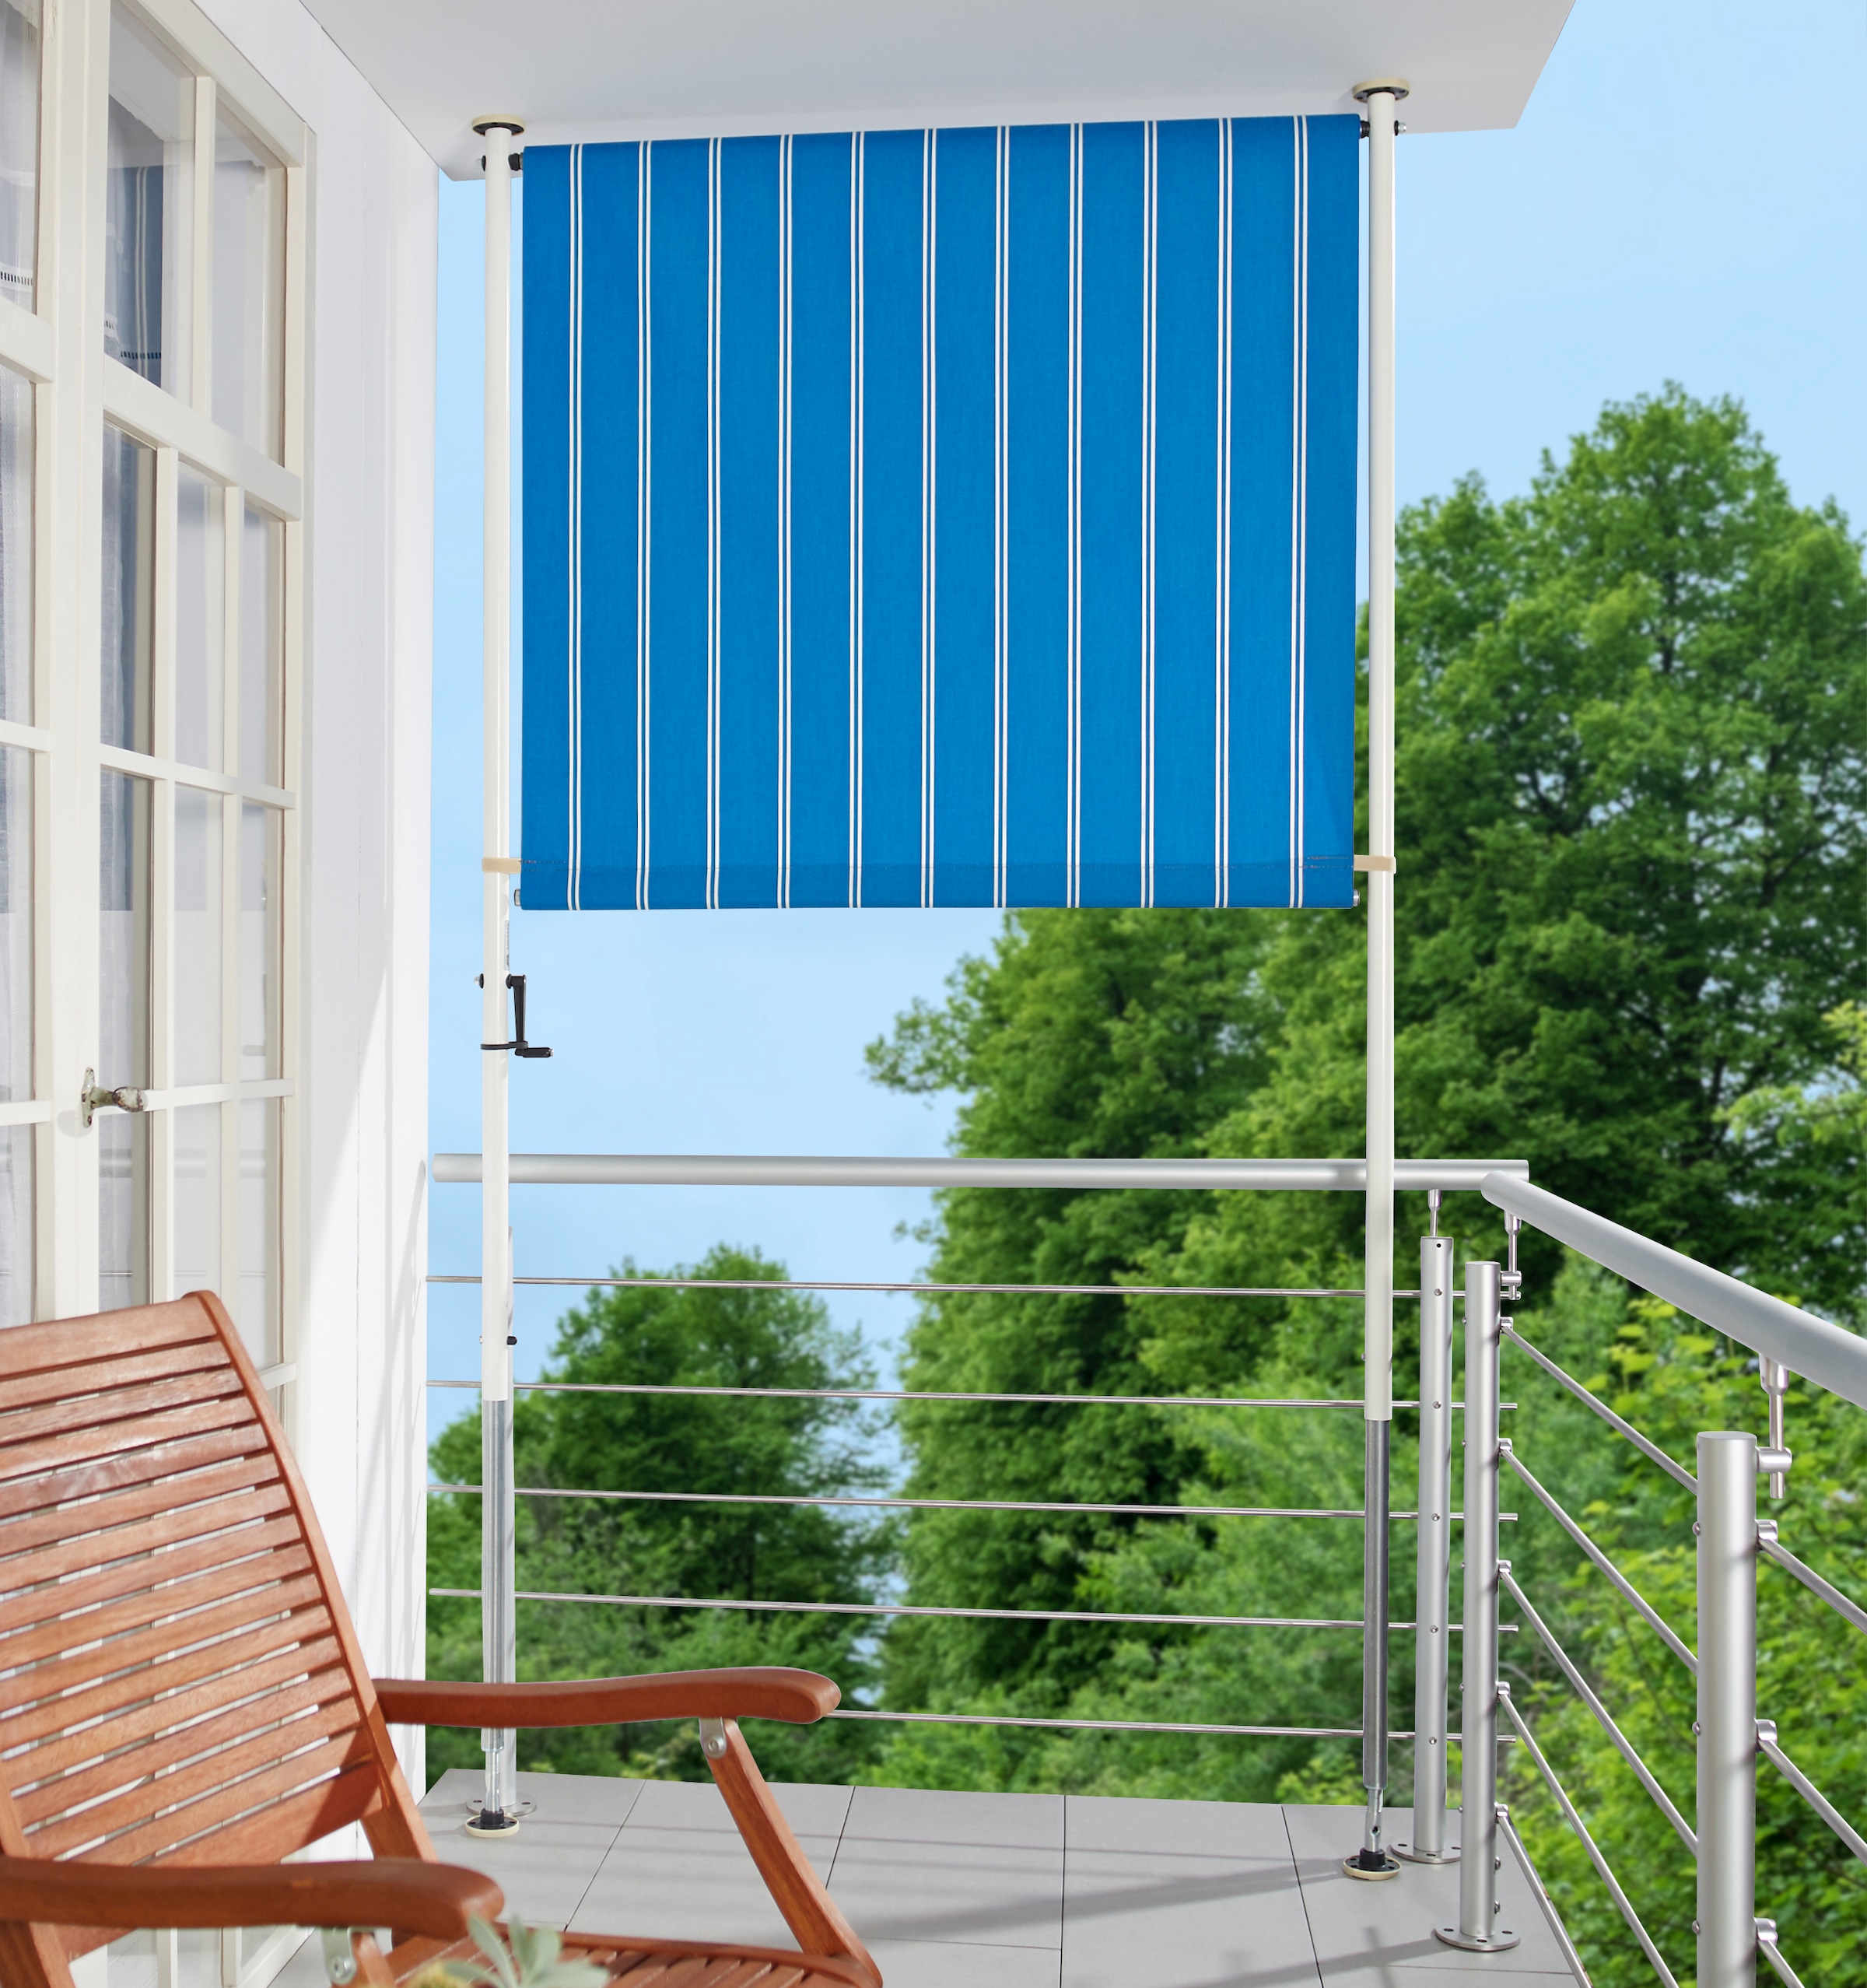 Angerer Freizeitmöbel Klemm-Senkrechtmarkise, blau/weiß, BxH: 150x225 cm